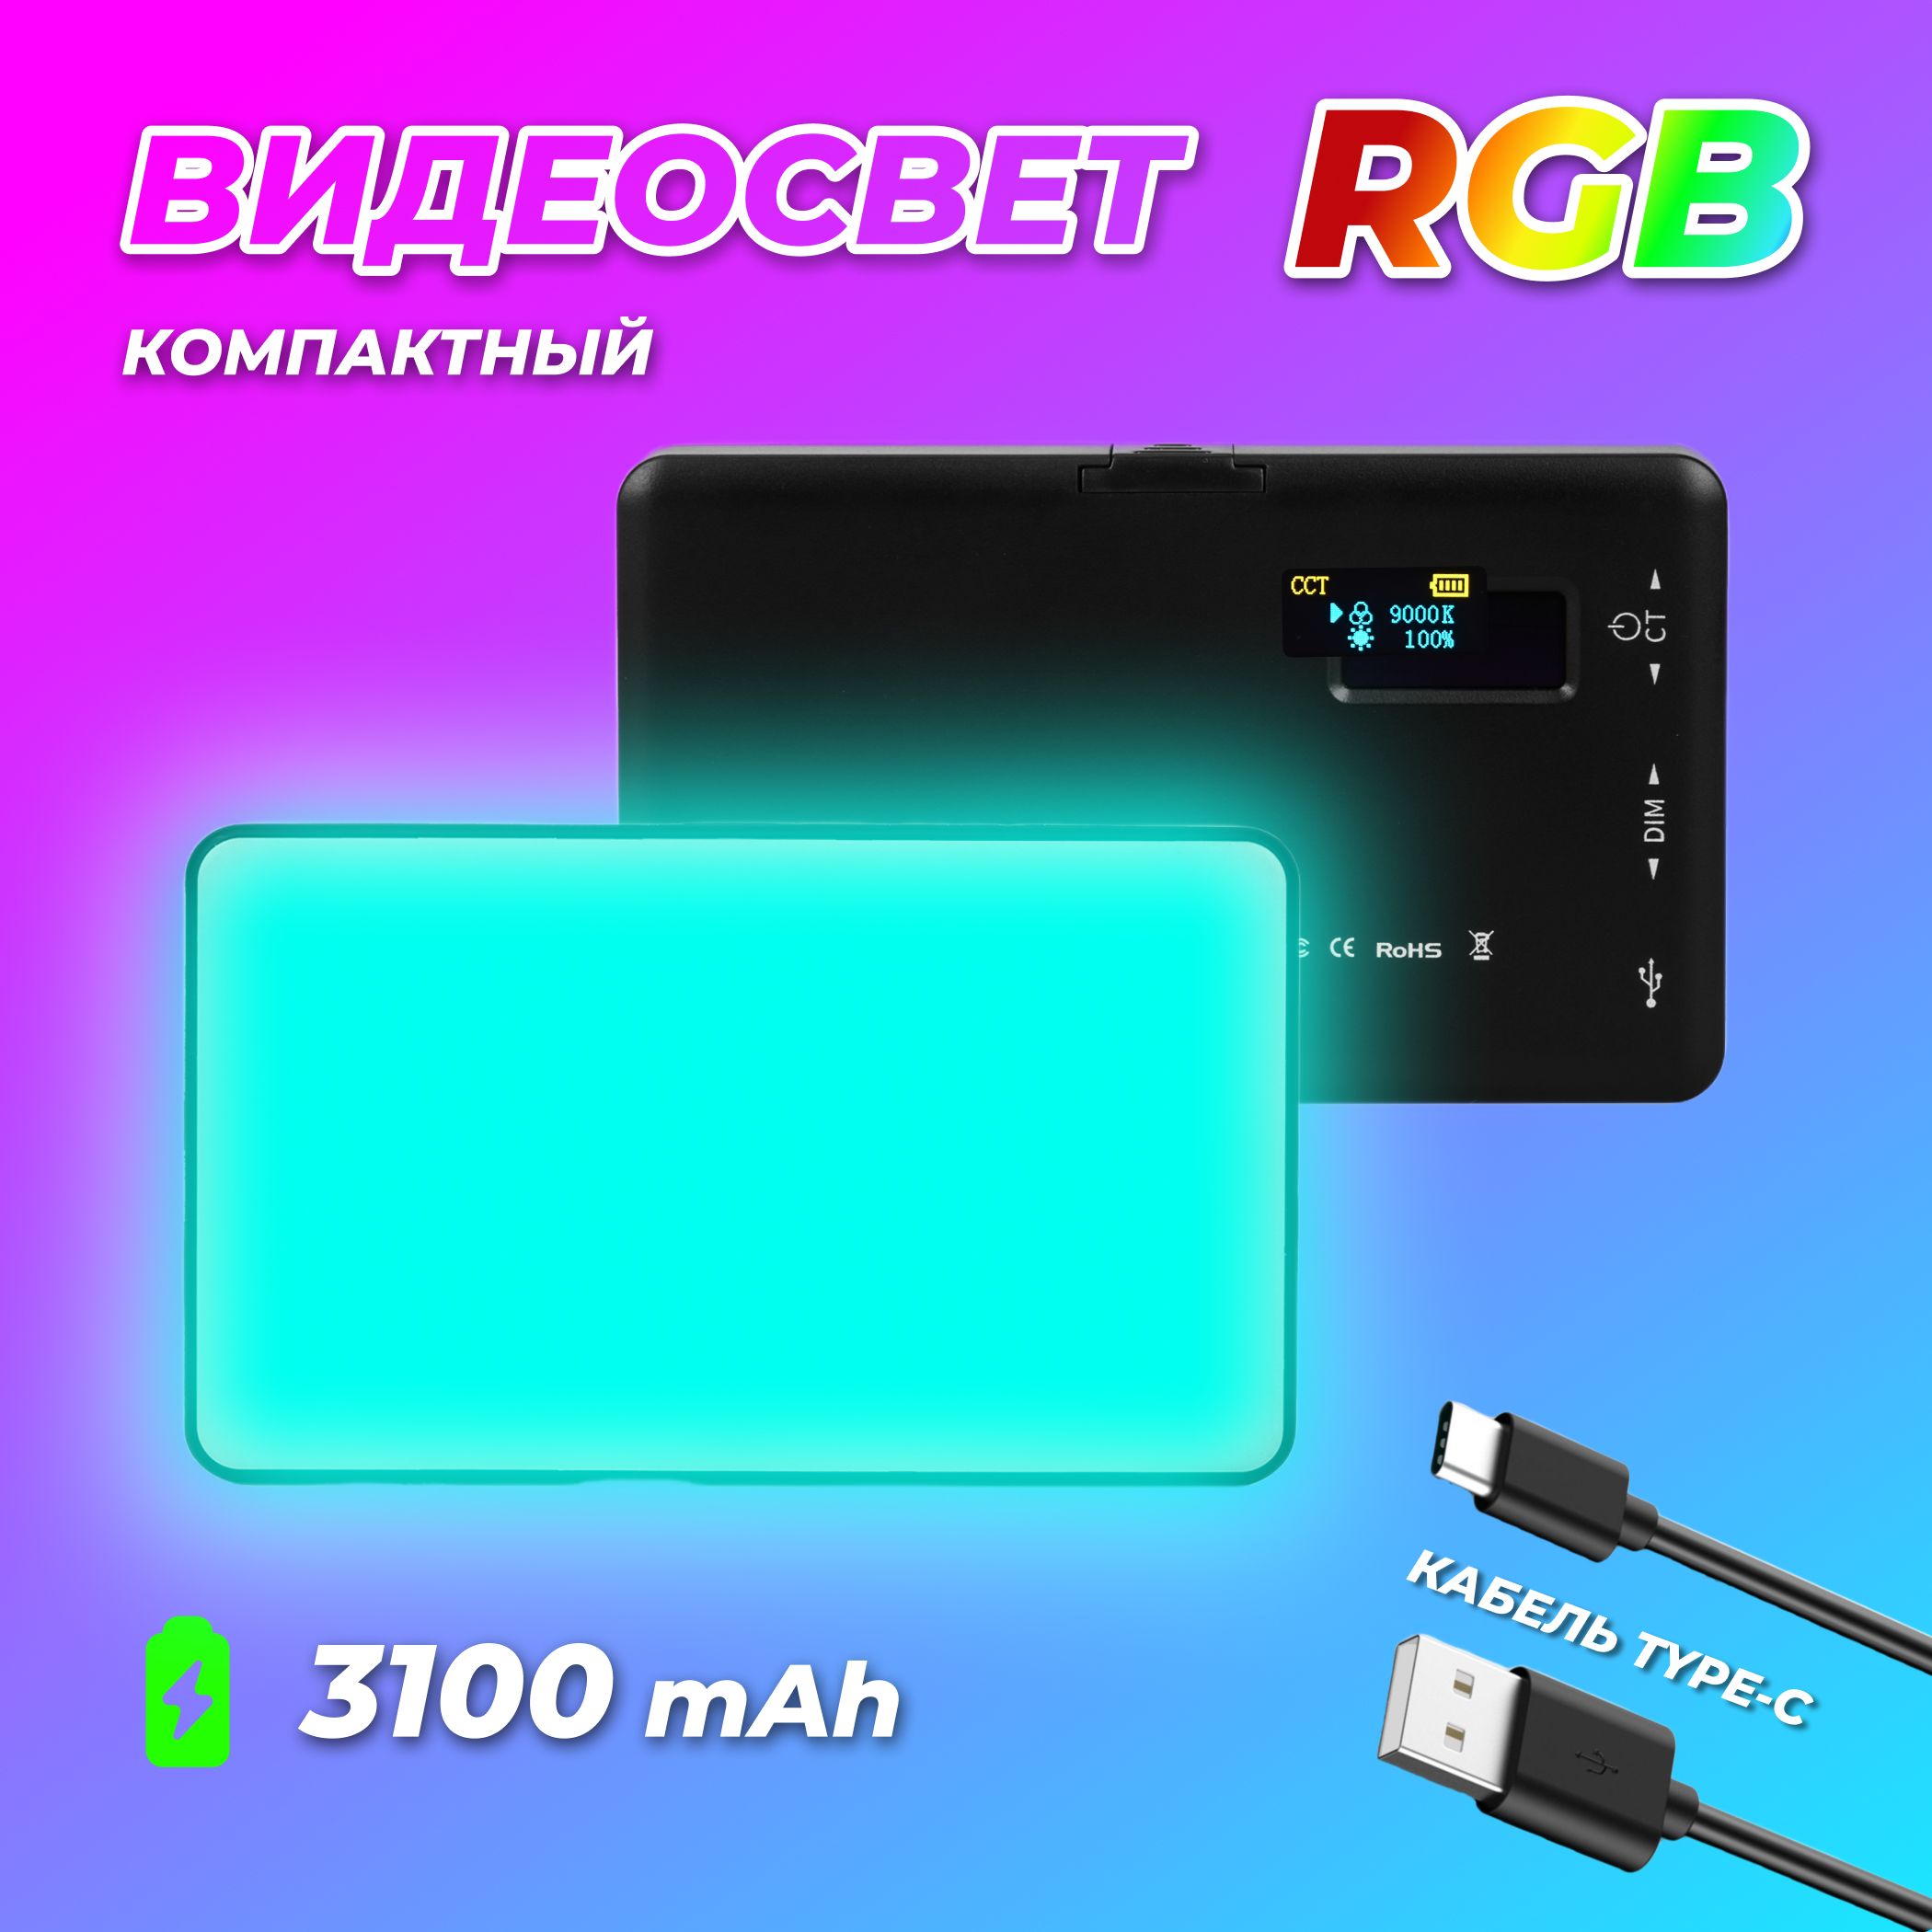 ВидеосветRGBкомпактныйосветительдляфото/видеосъемки